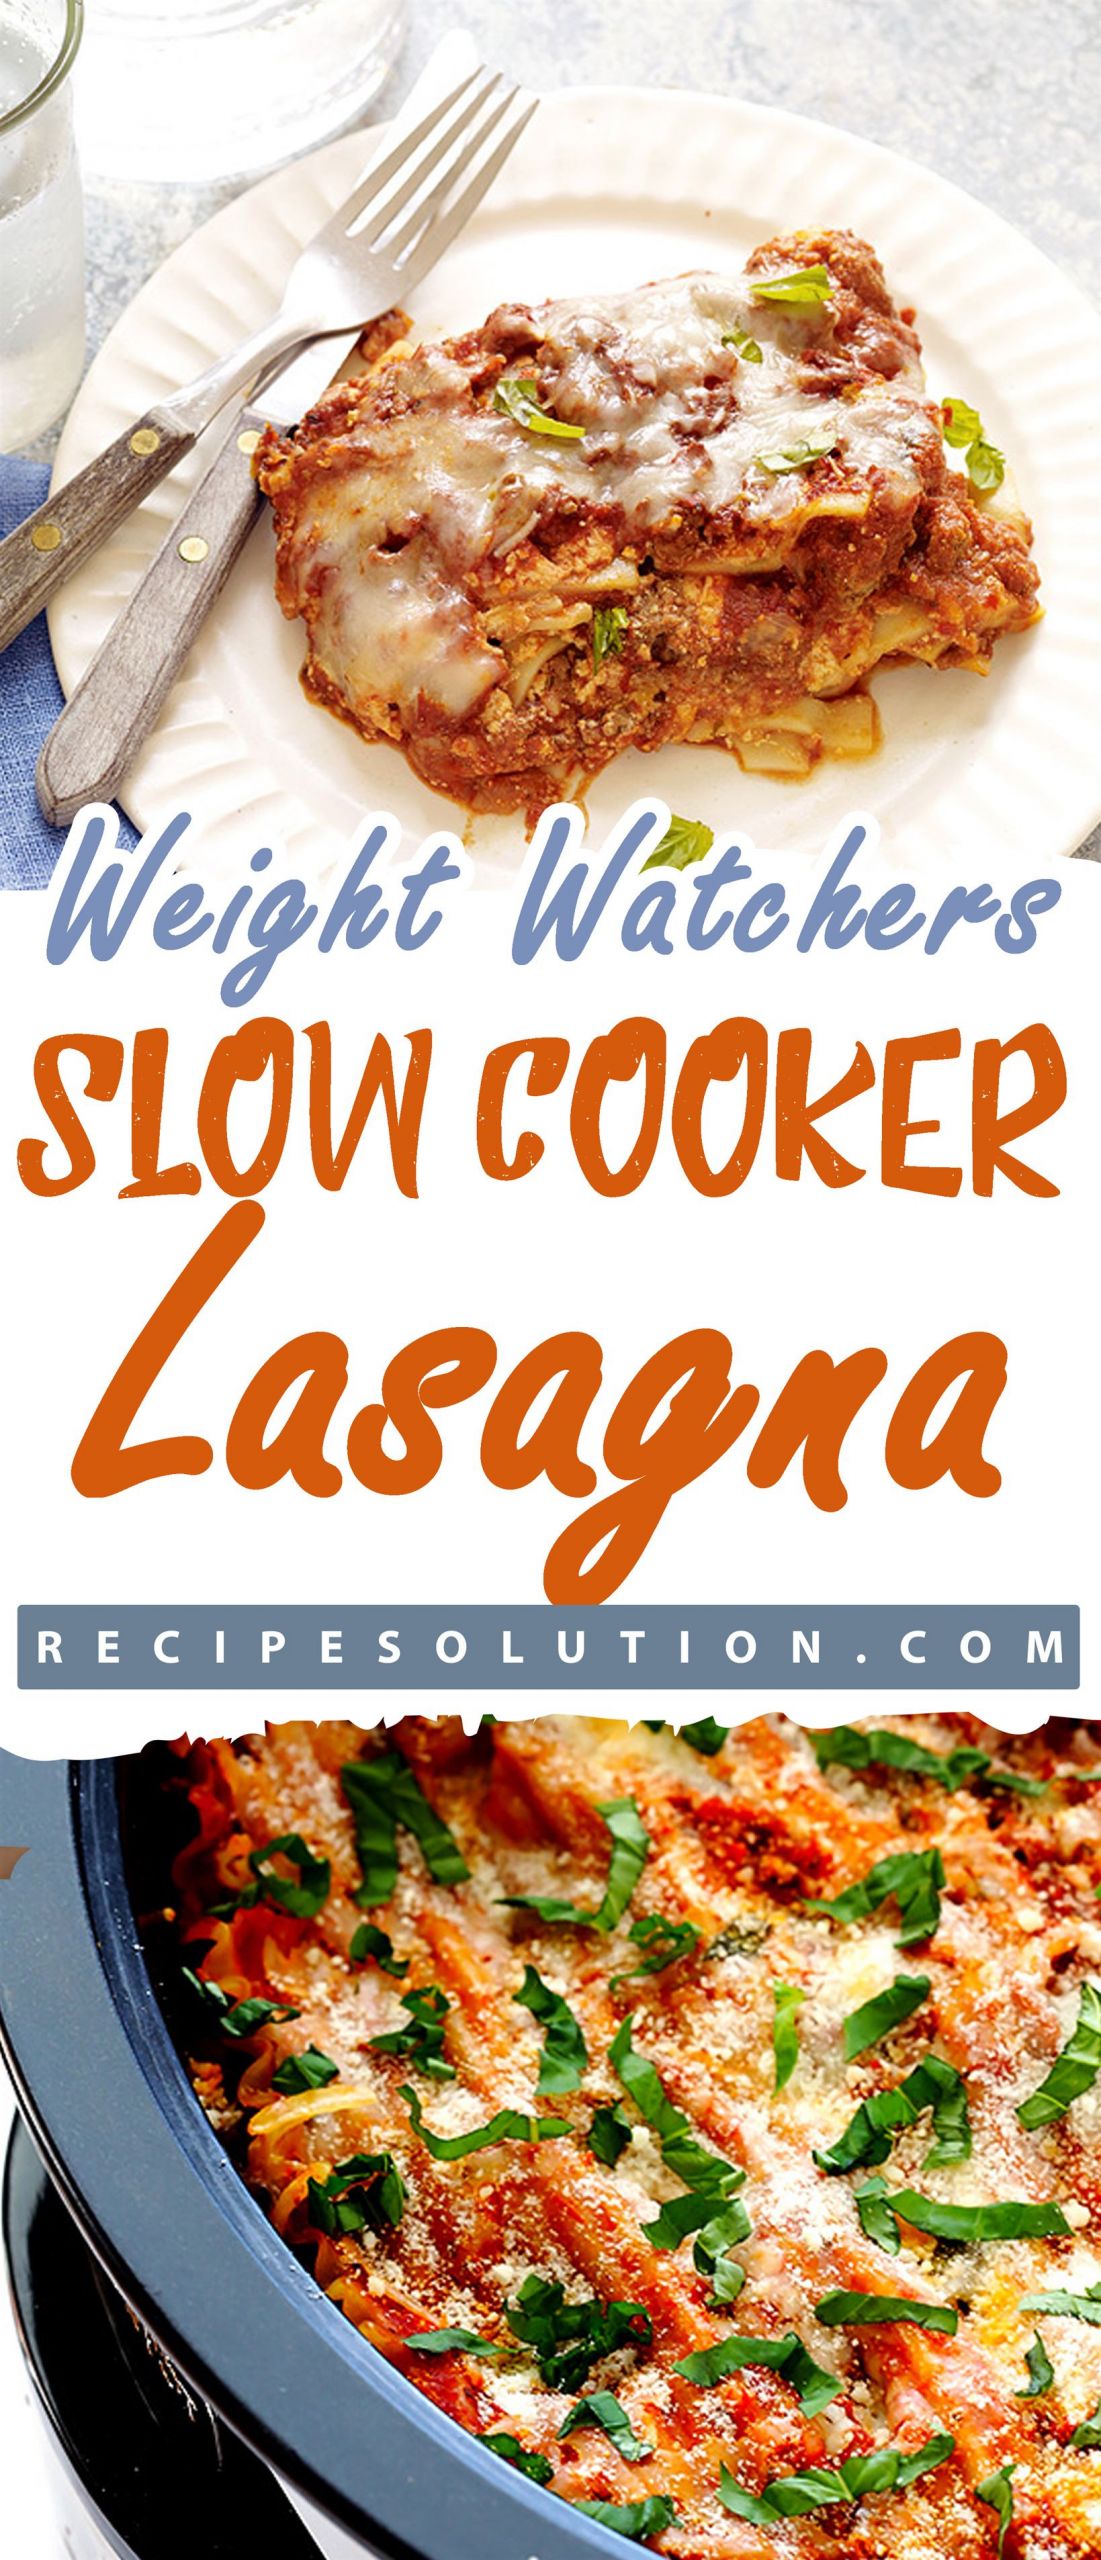 Weight Watcher Slow Cooker Lasagna
 Slow Cooker Lasagna Recipe Solution